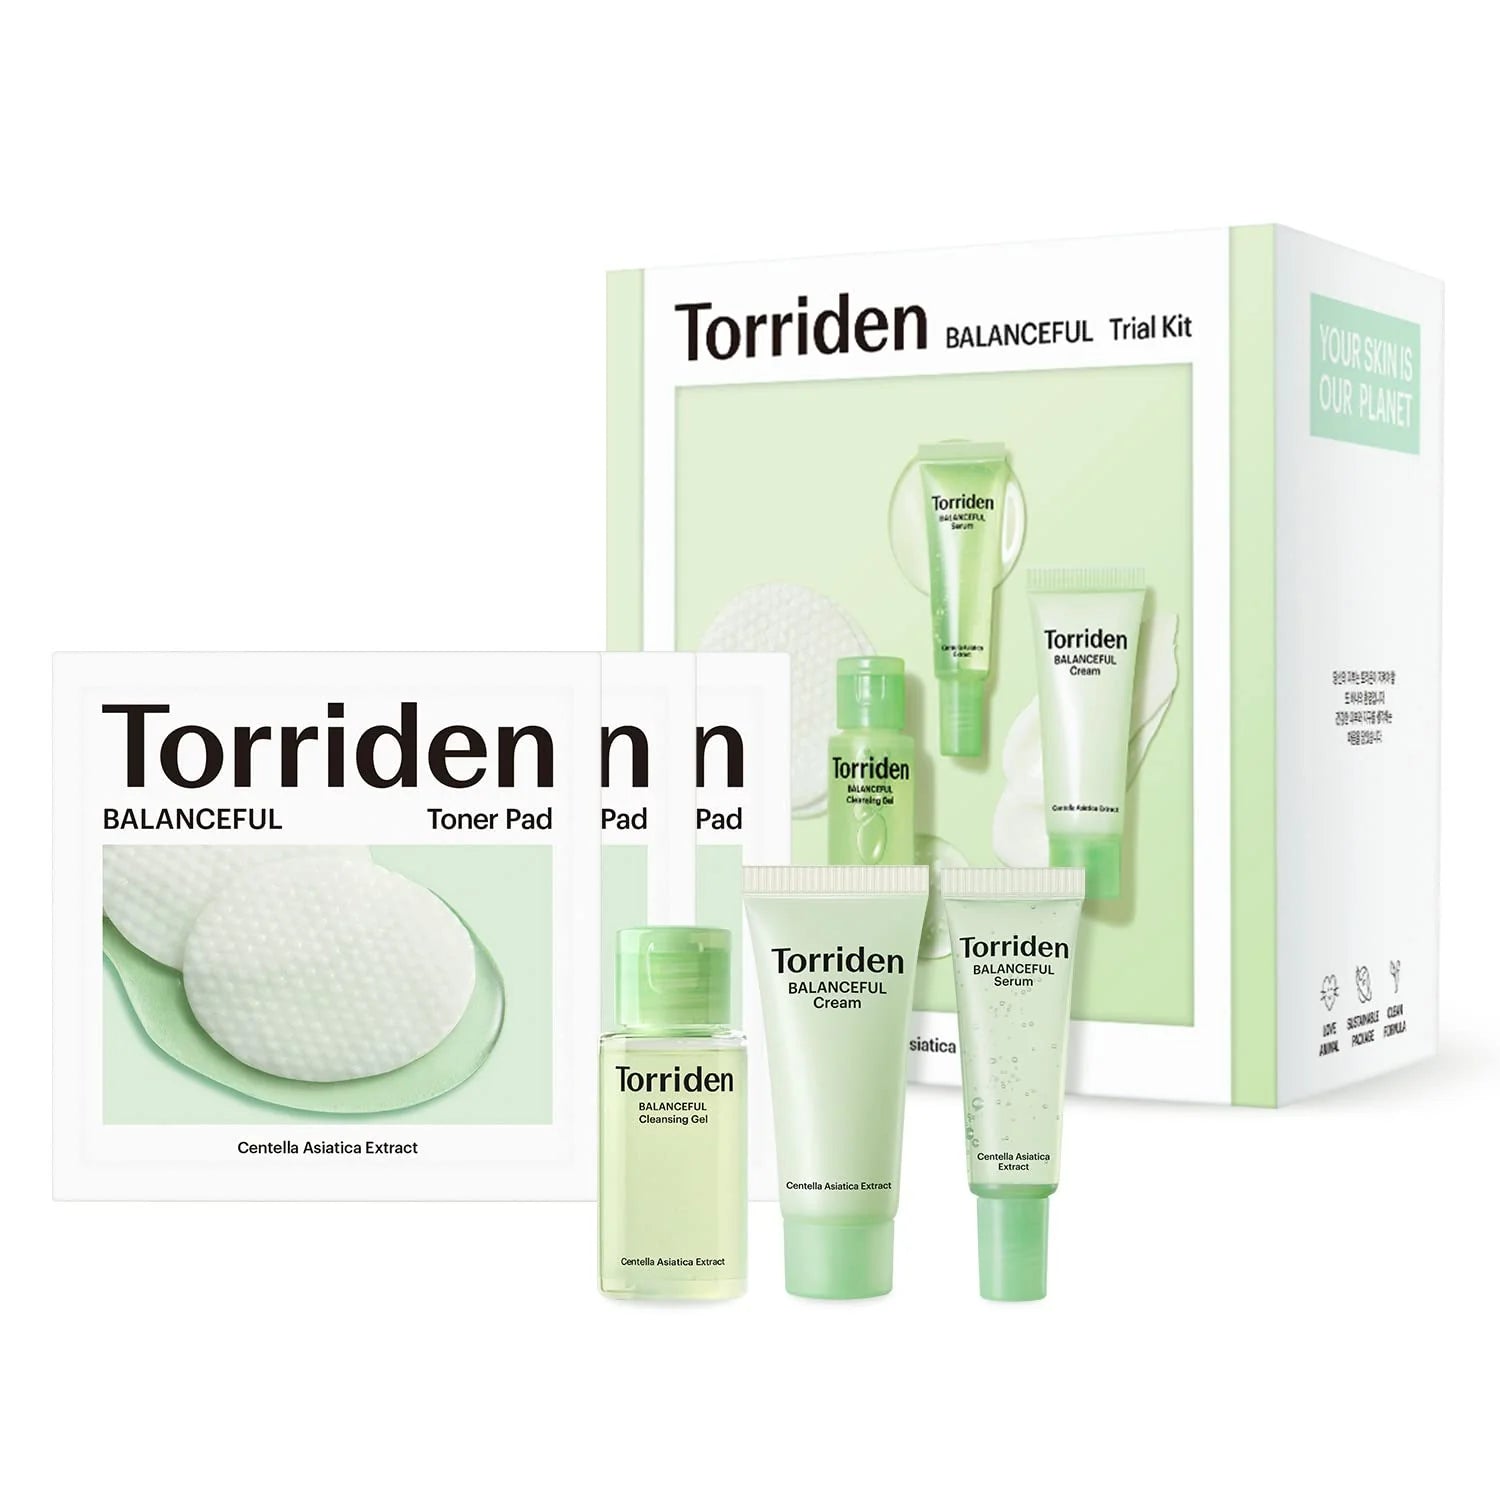 TORRIDEN - Balanceful Skin Care Trial Kit